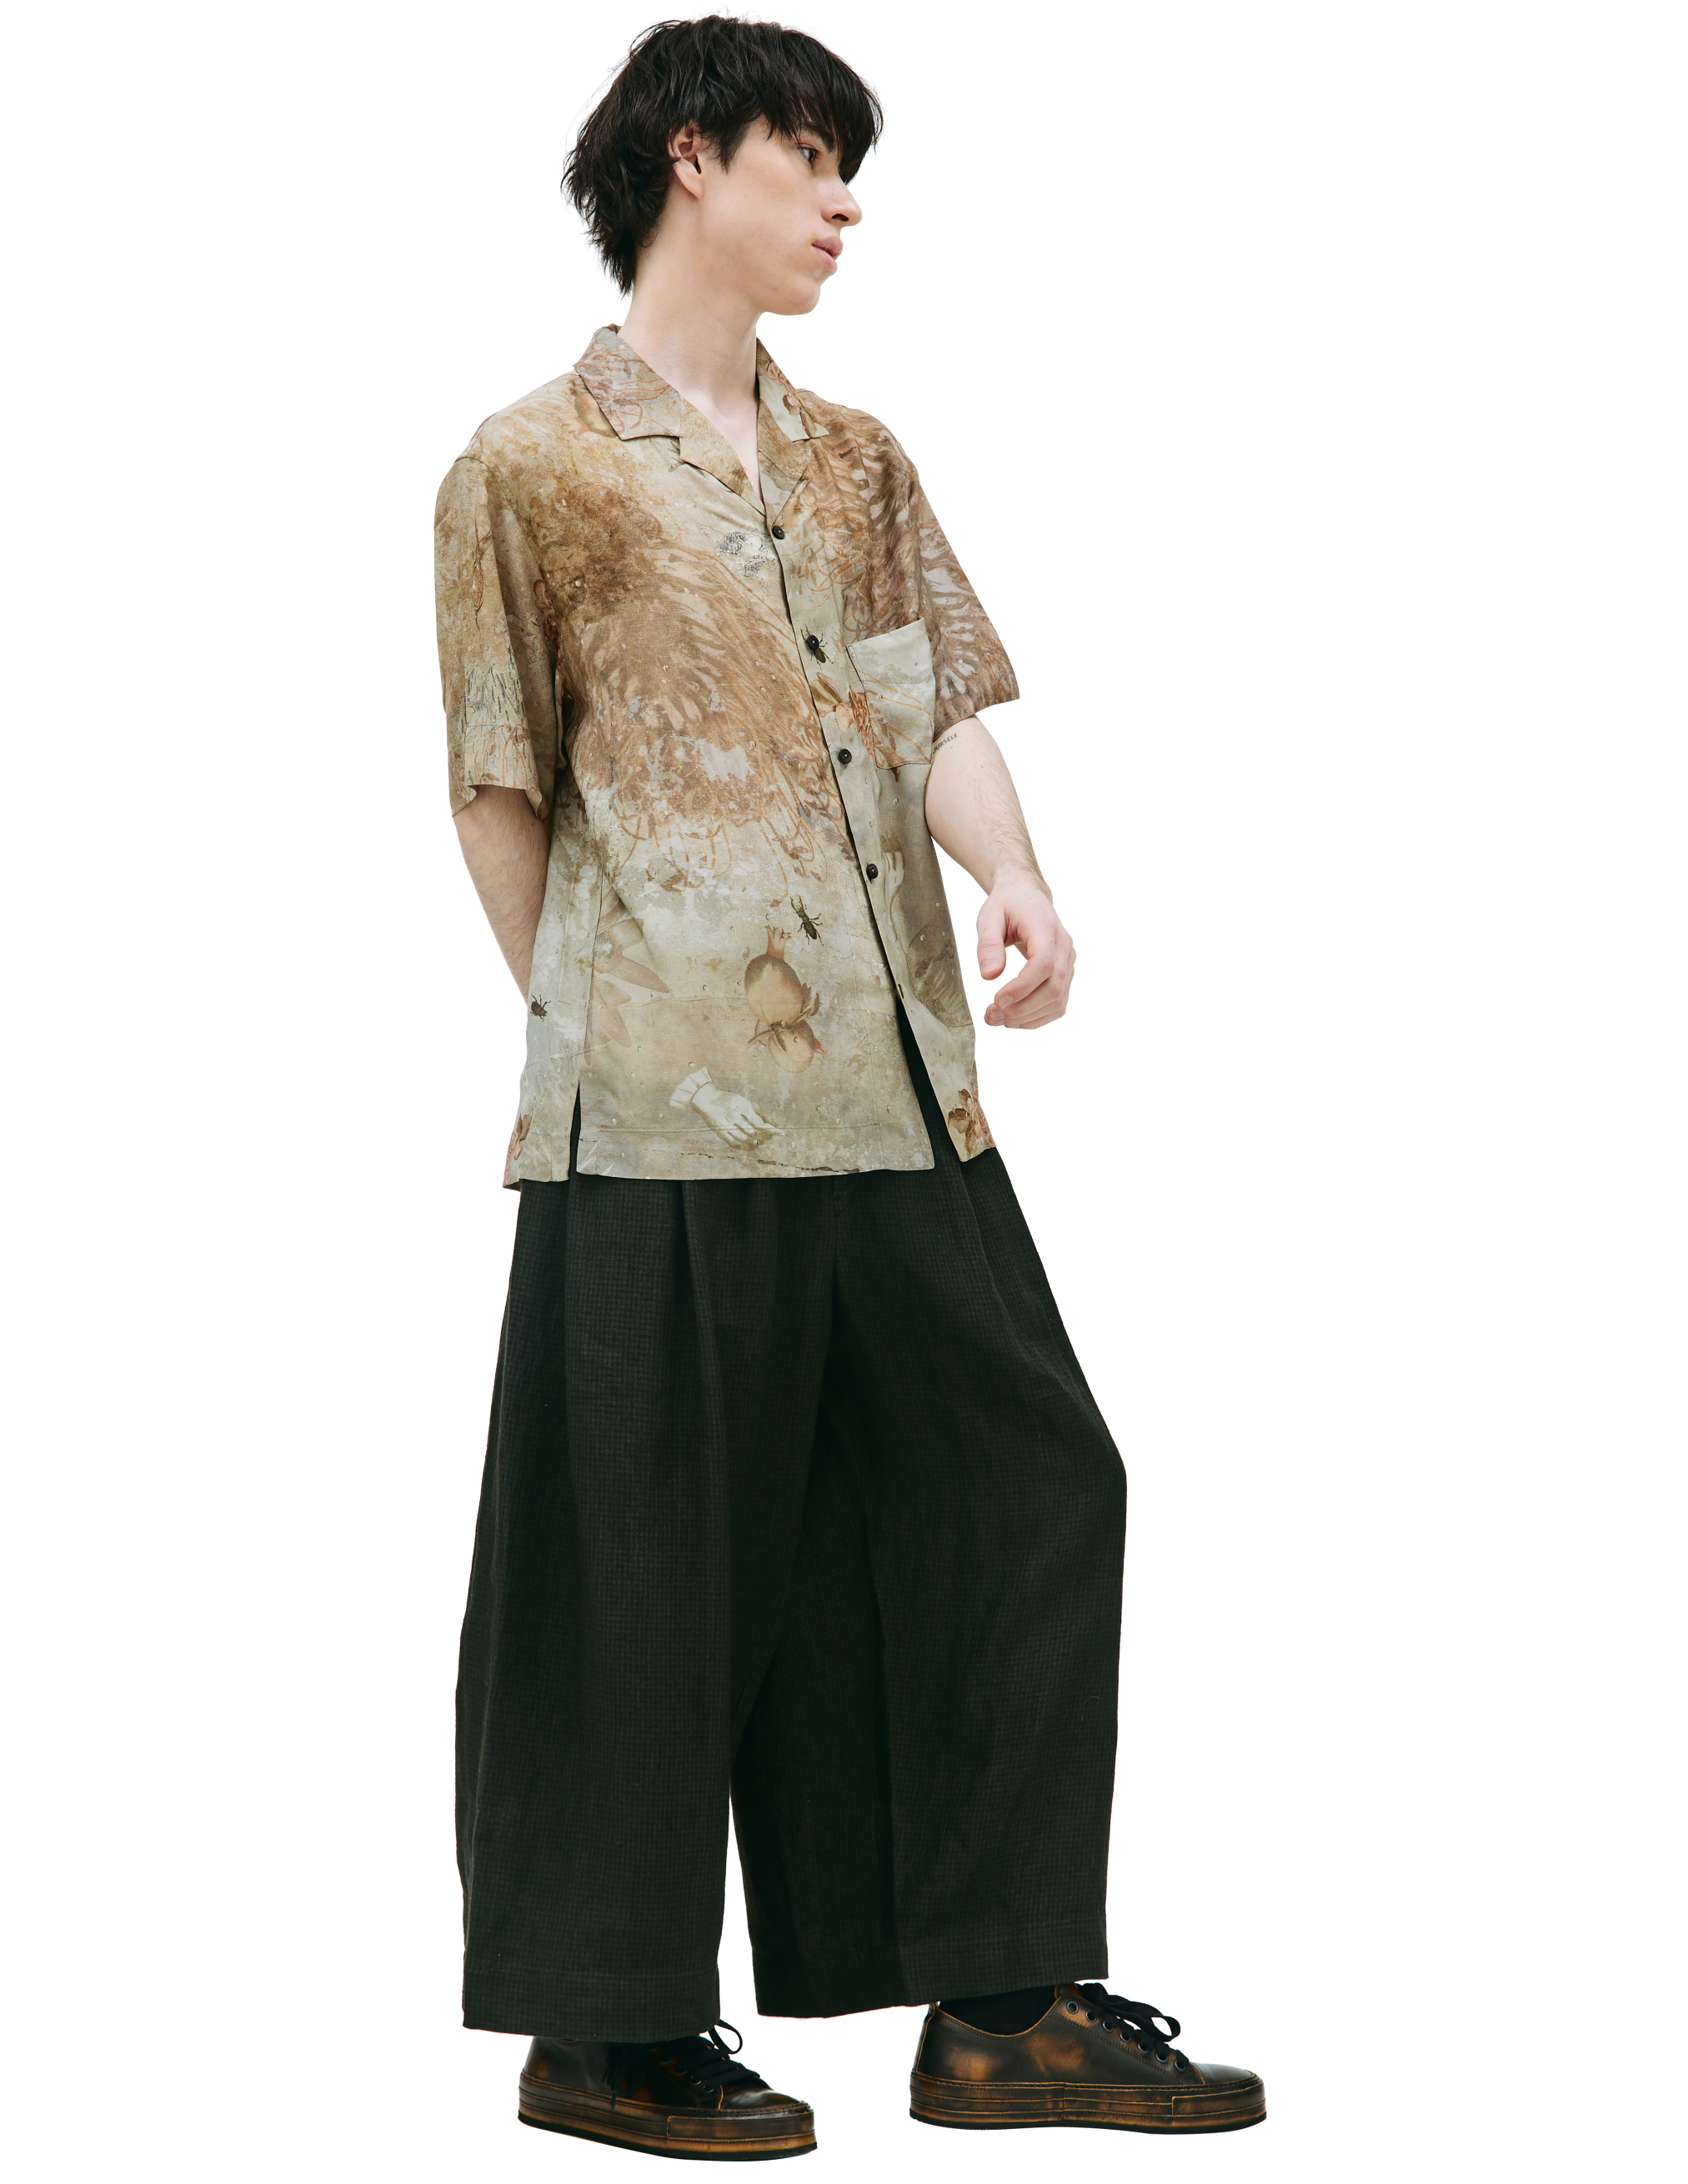 Принтованная рубашка с коротким рукавом Ziggy Chen 0M2310704, размер 52 - фото 2